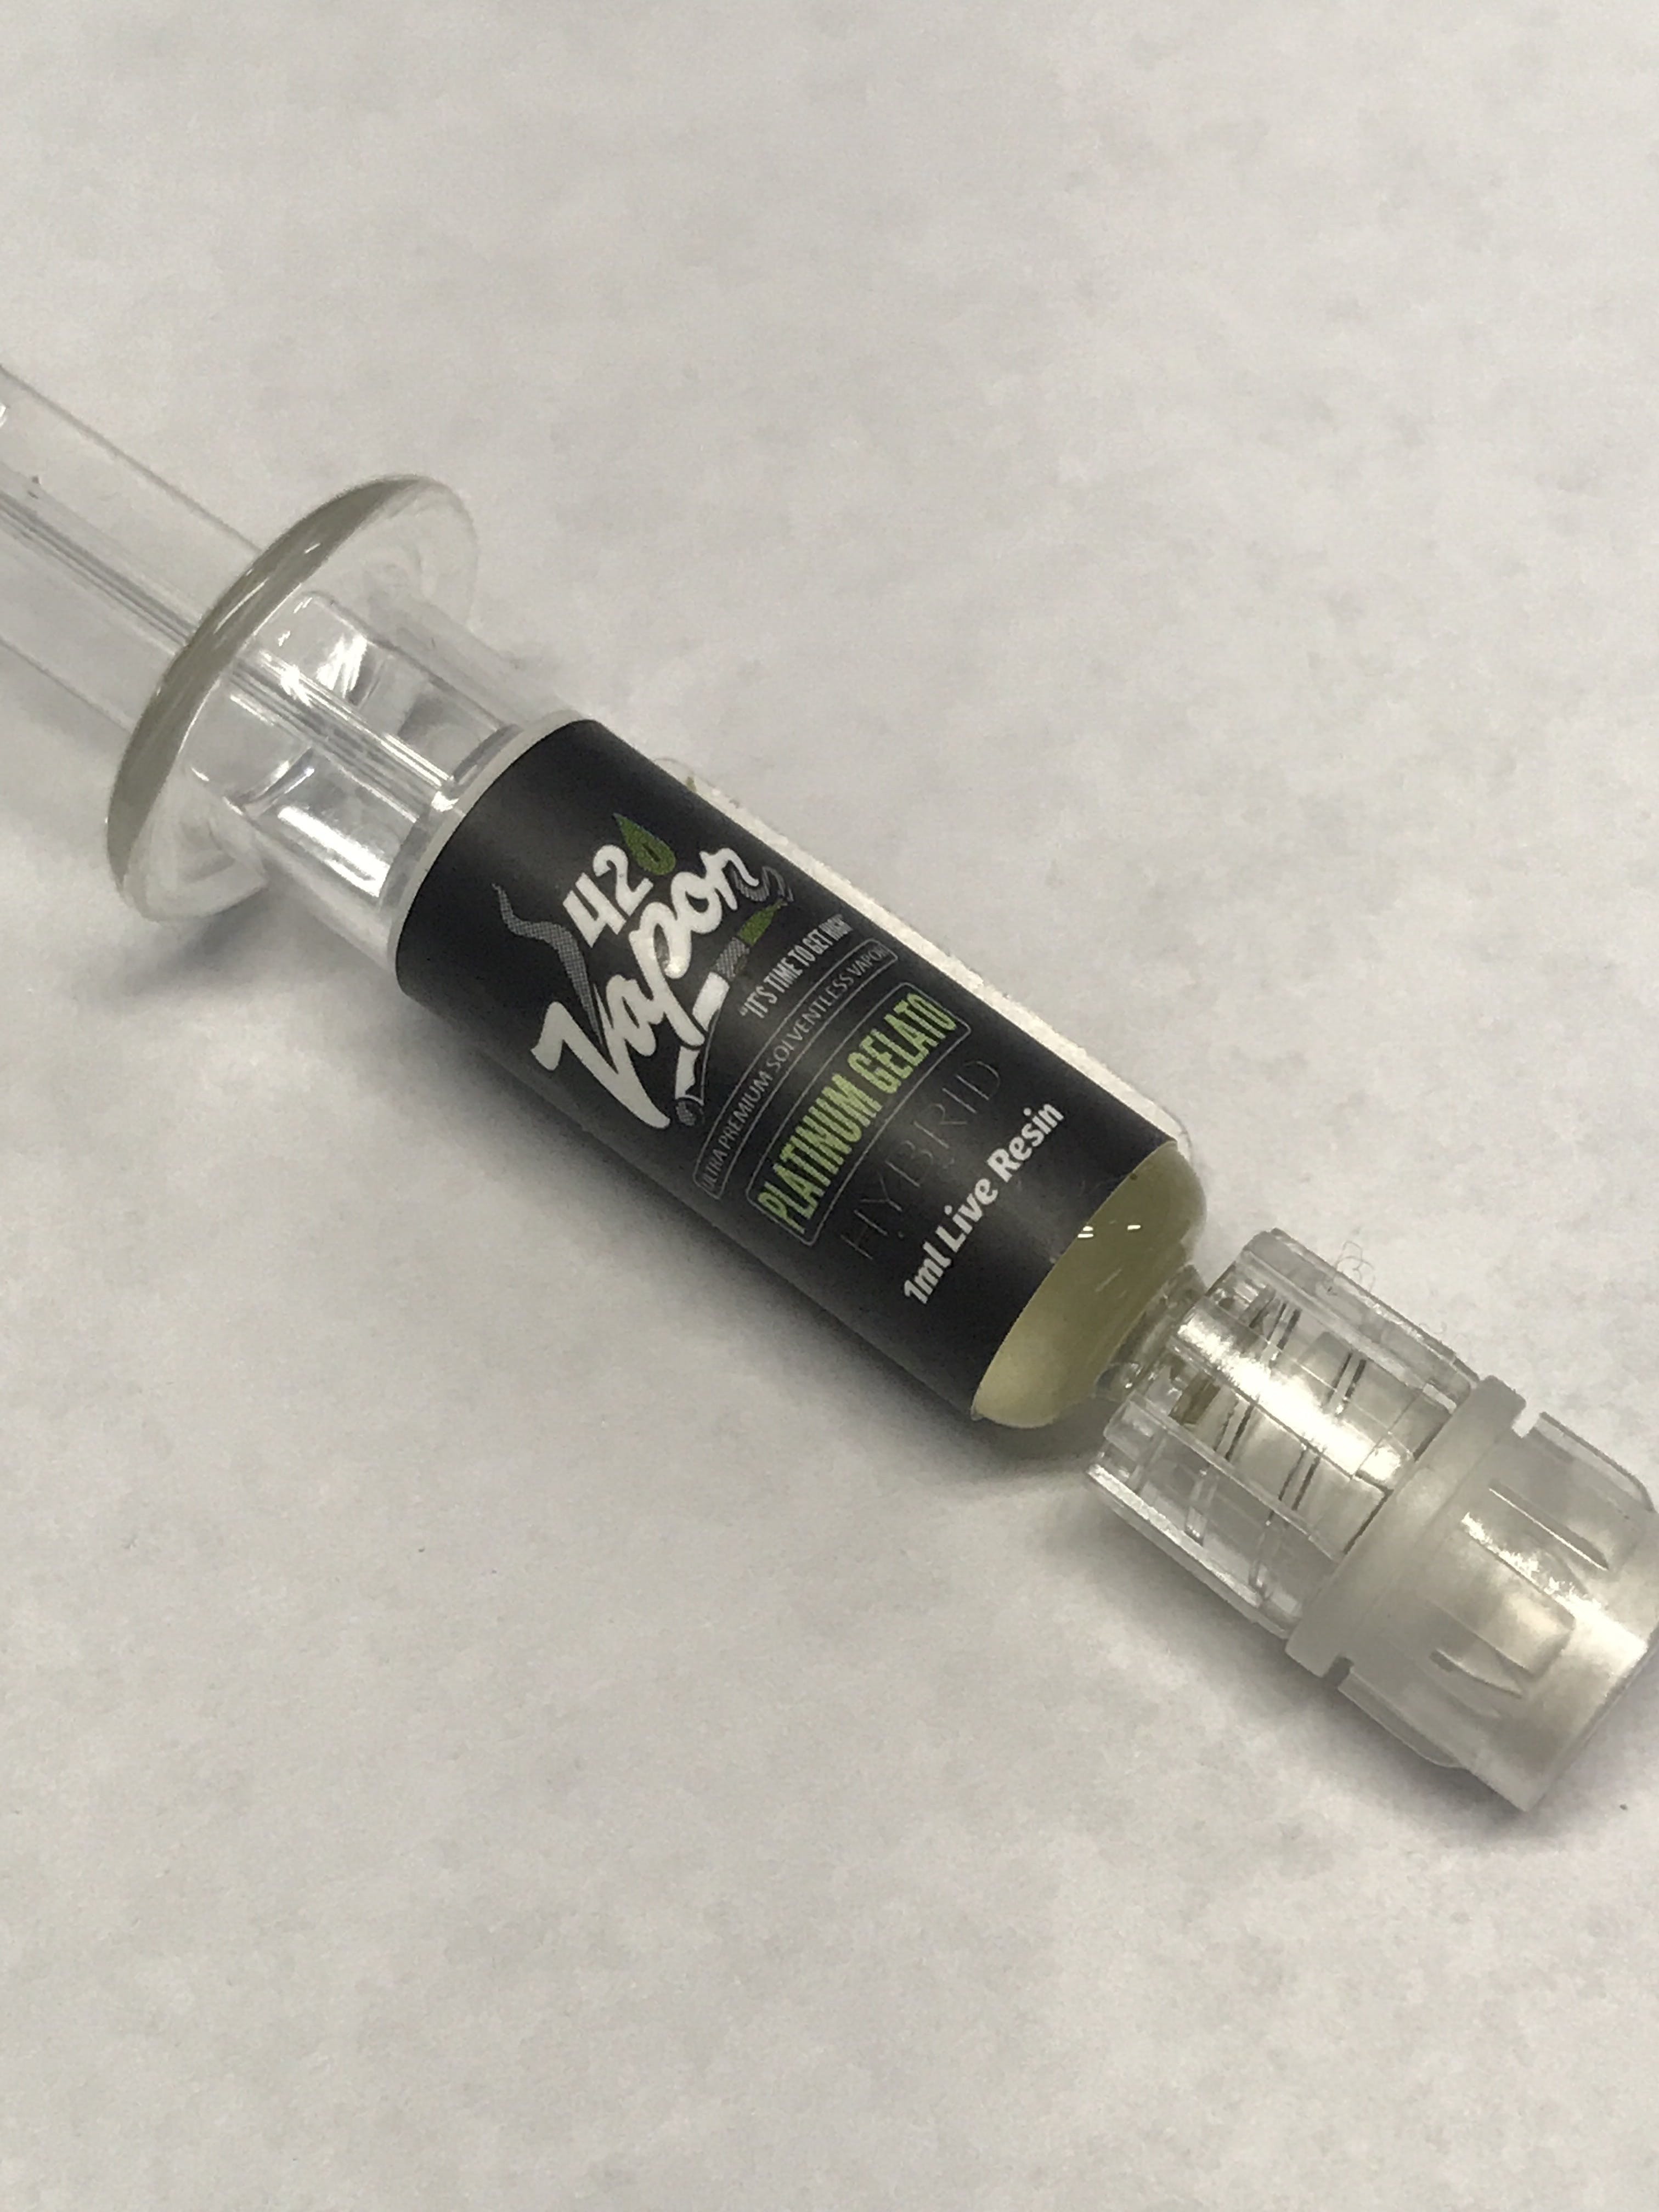 concentrate-420-vapor-live-resin-syringe